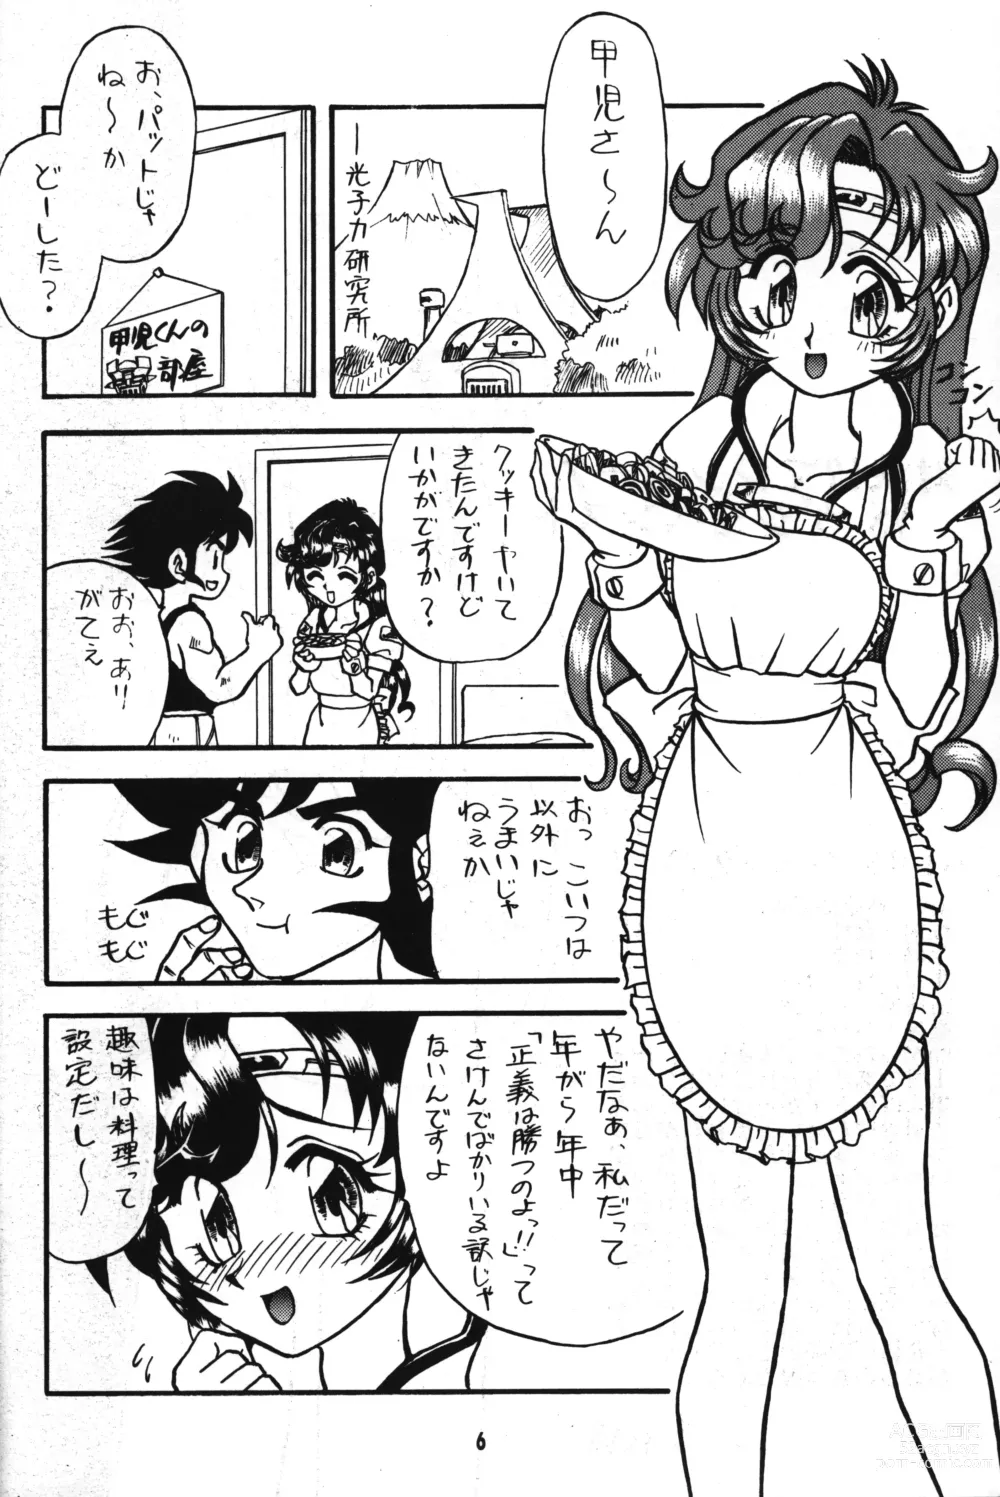 Page 5 of doujinshi Seigi wa Katsu no yo!!